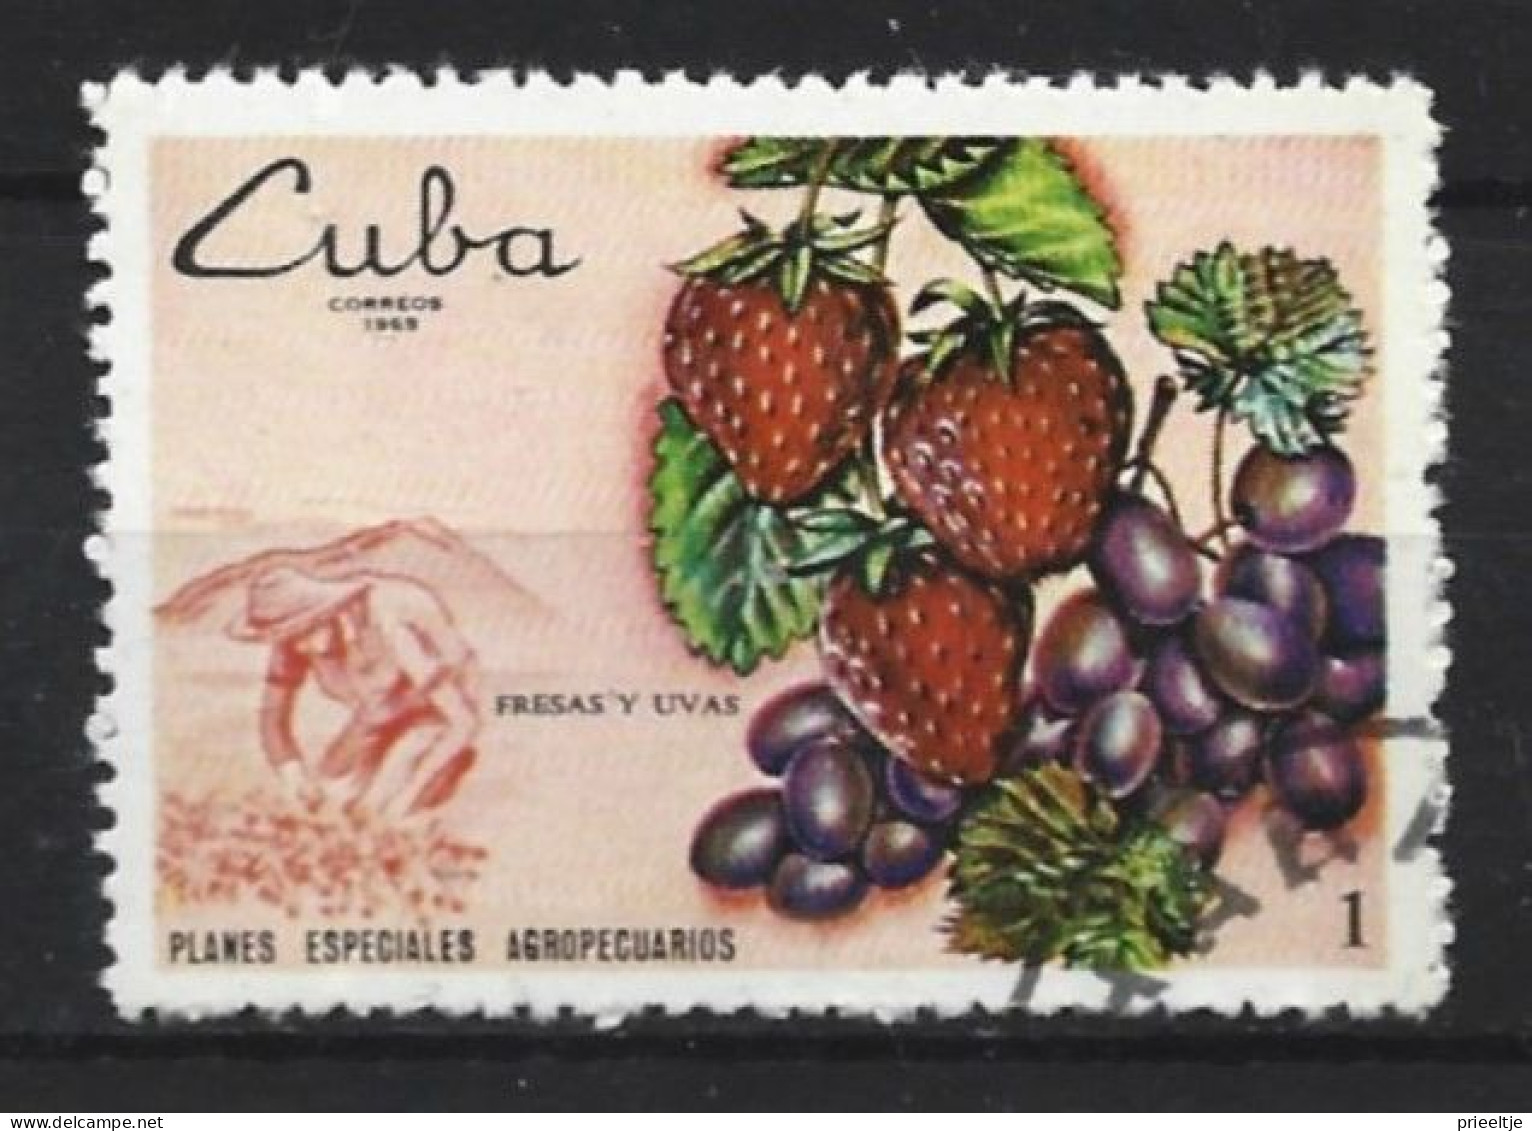 Cuba 1969  Agriculture  Y.T. 1328 (0) - Oblitérés